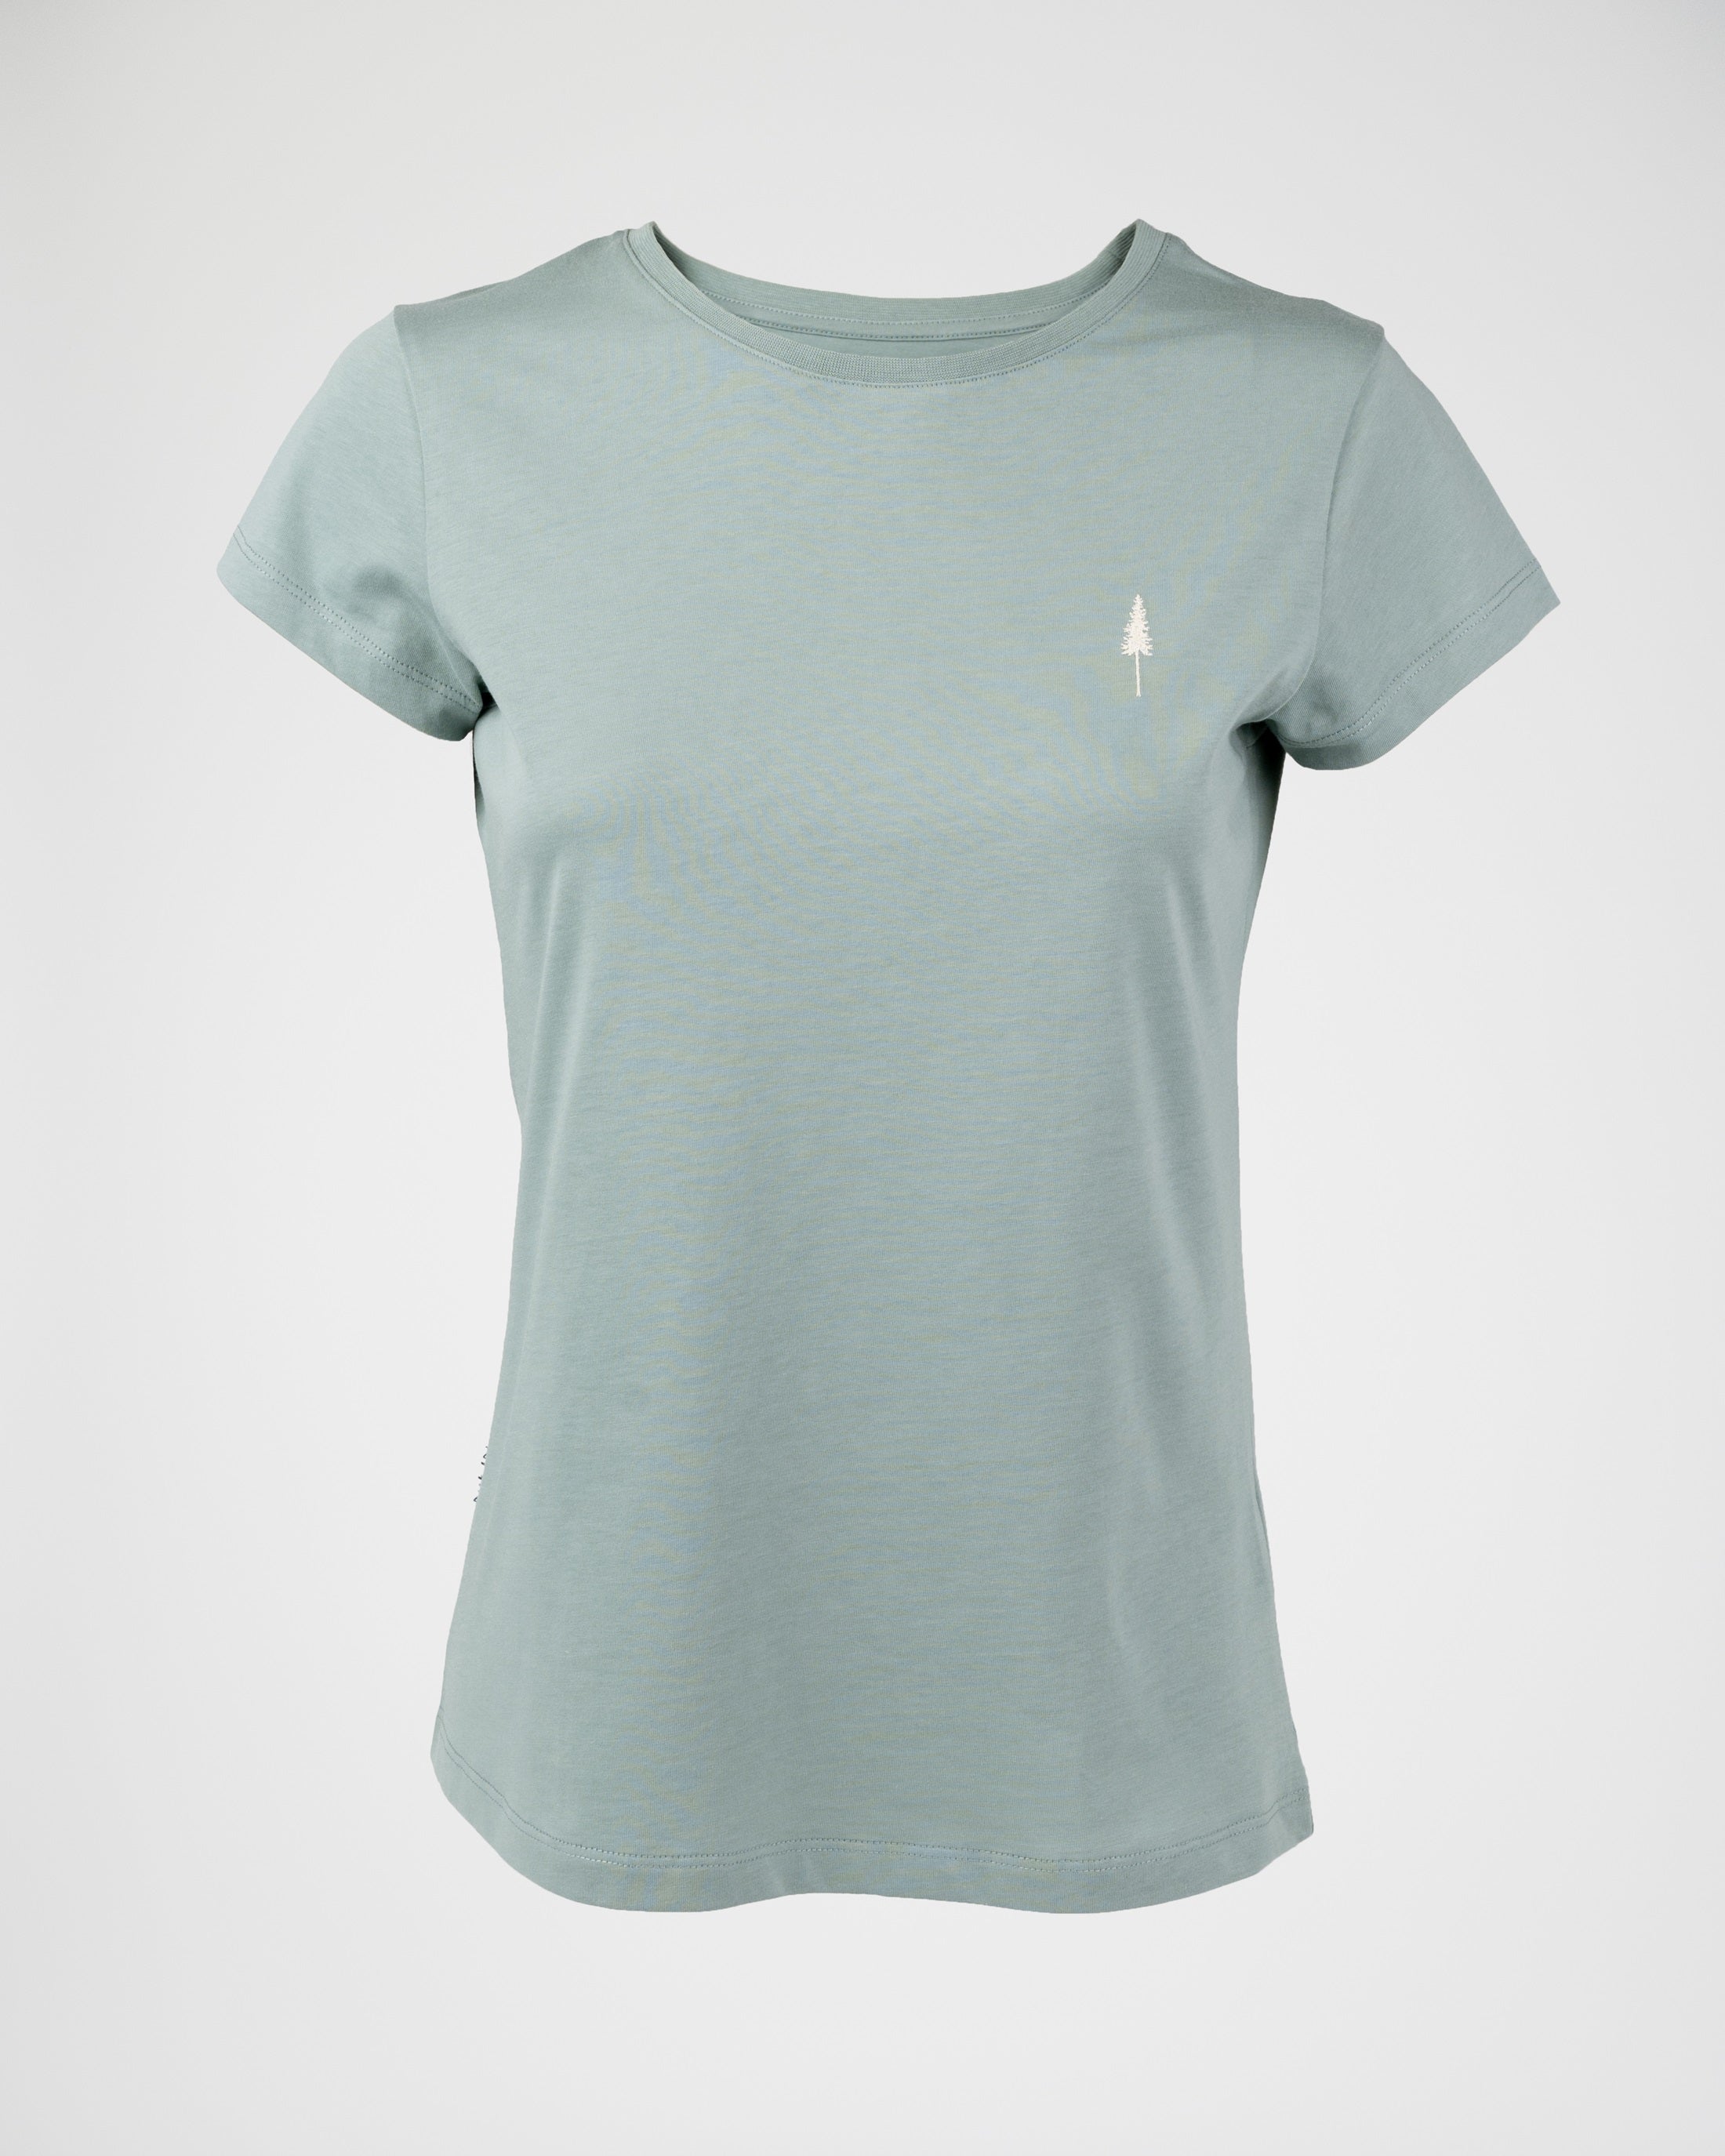 Women's organic cotton T-shirt Treeshirt Turquoise